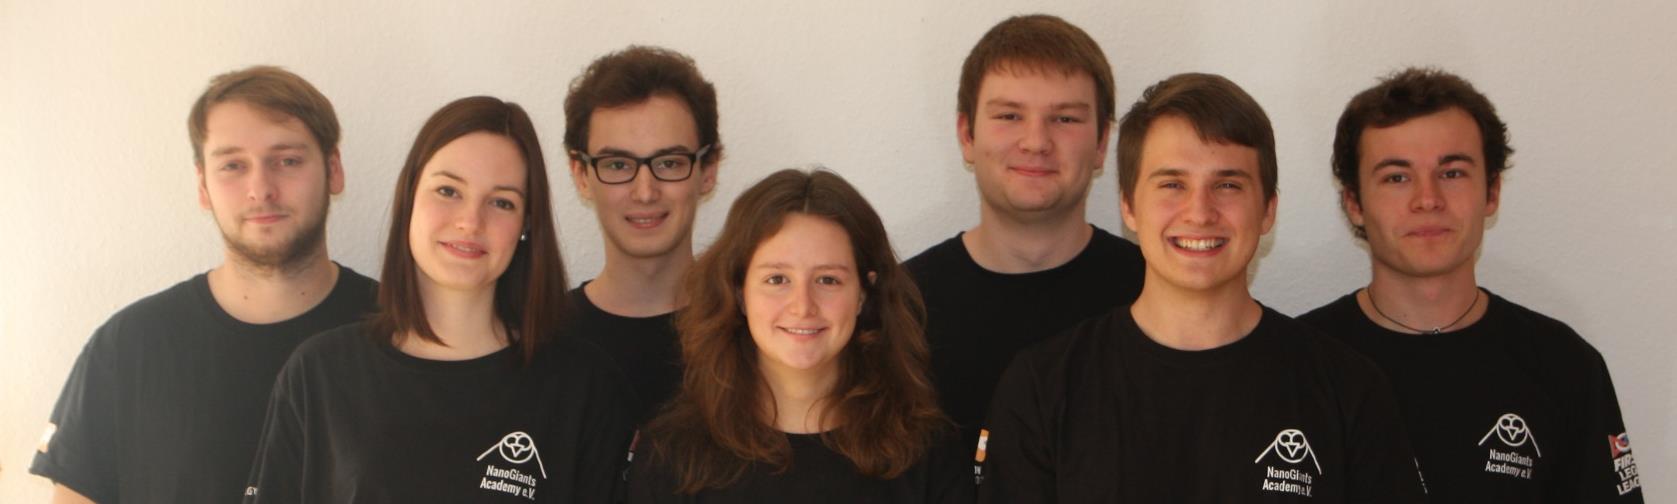 Das Team Mitglieder des FLL-Teams SAP Nano Giants (2006 bis 2013) FLL-Erfahrung als Forscher, Robot-Konstrukteure, Programmierer und sehr erfolgreiches Wettbewerbsteam Größter Erfolg 2013 Open